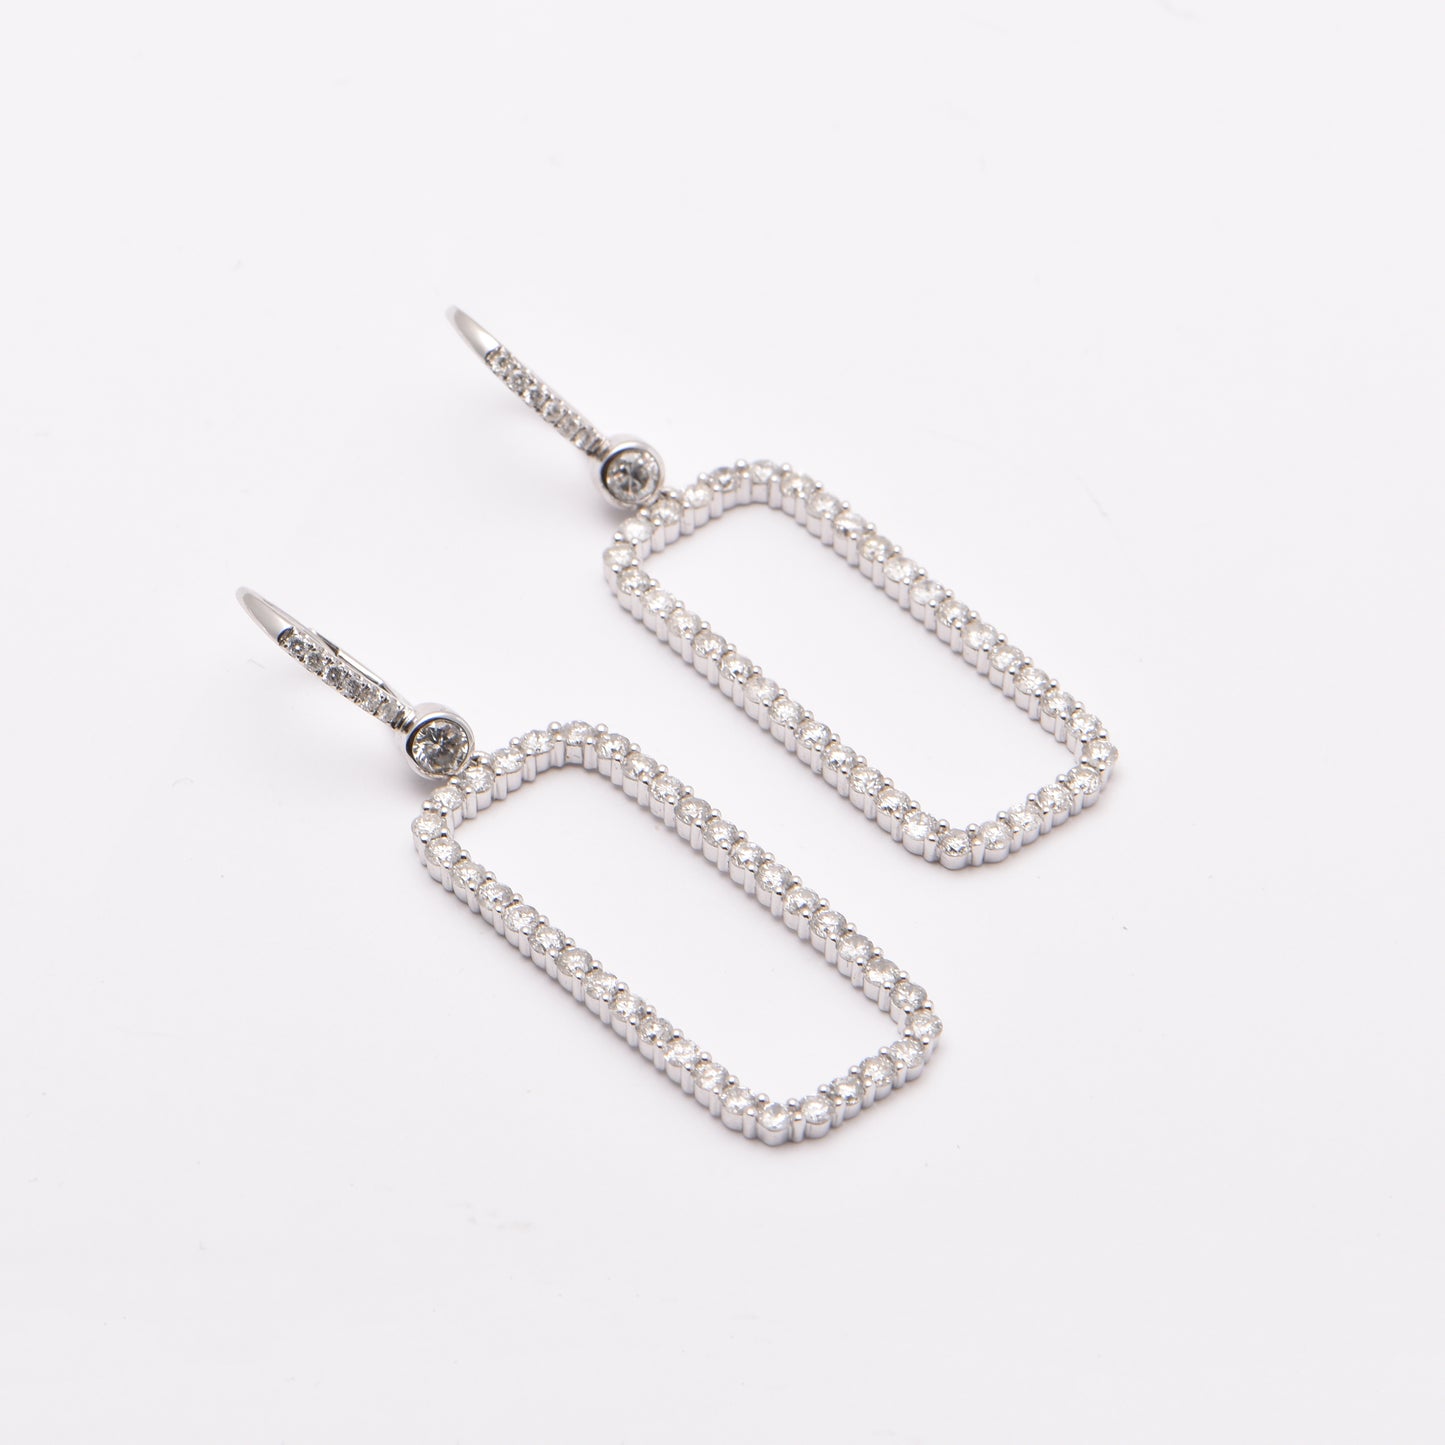 Rectangular Diamond Earrings